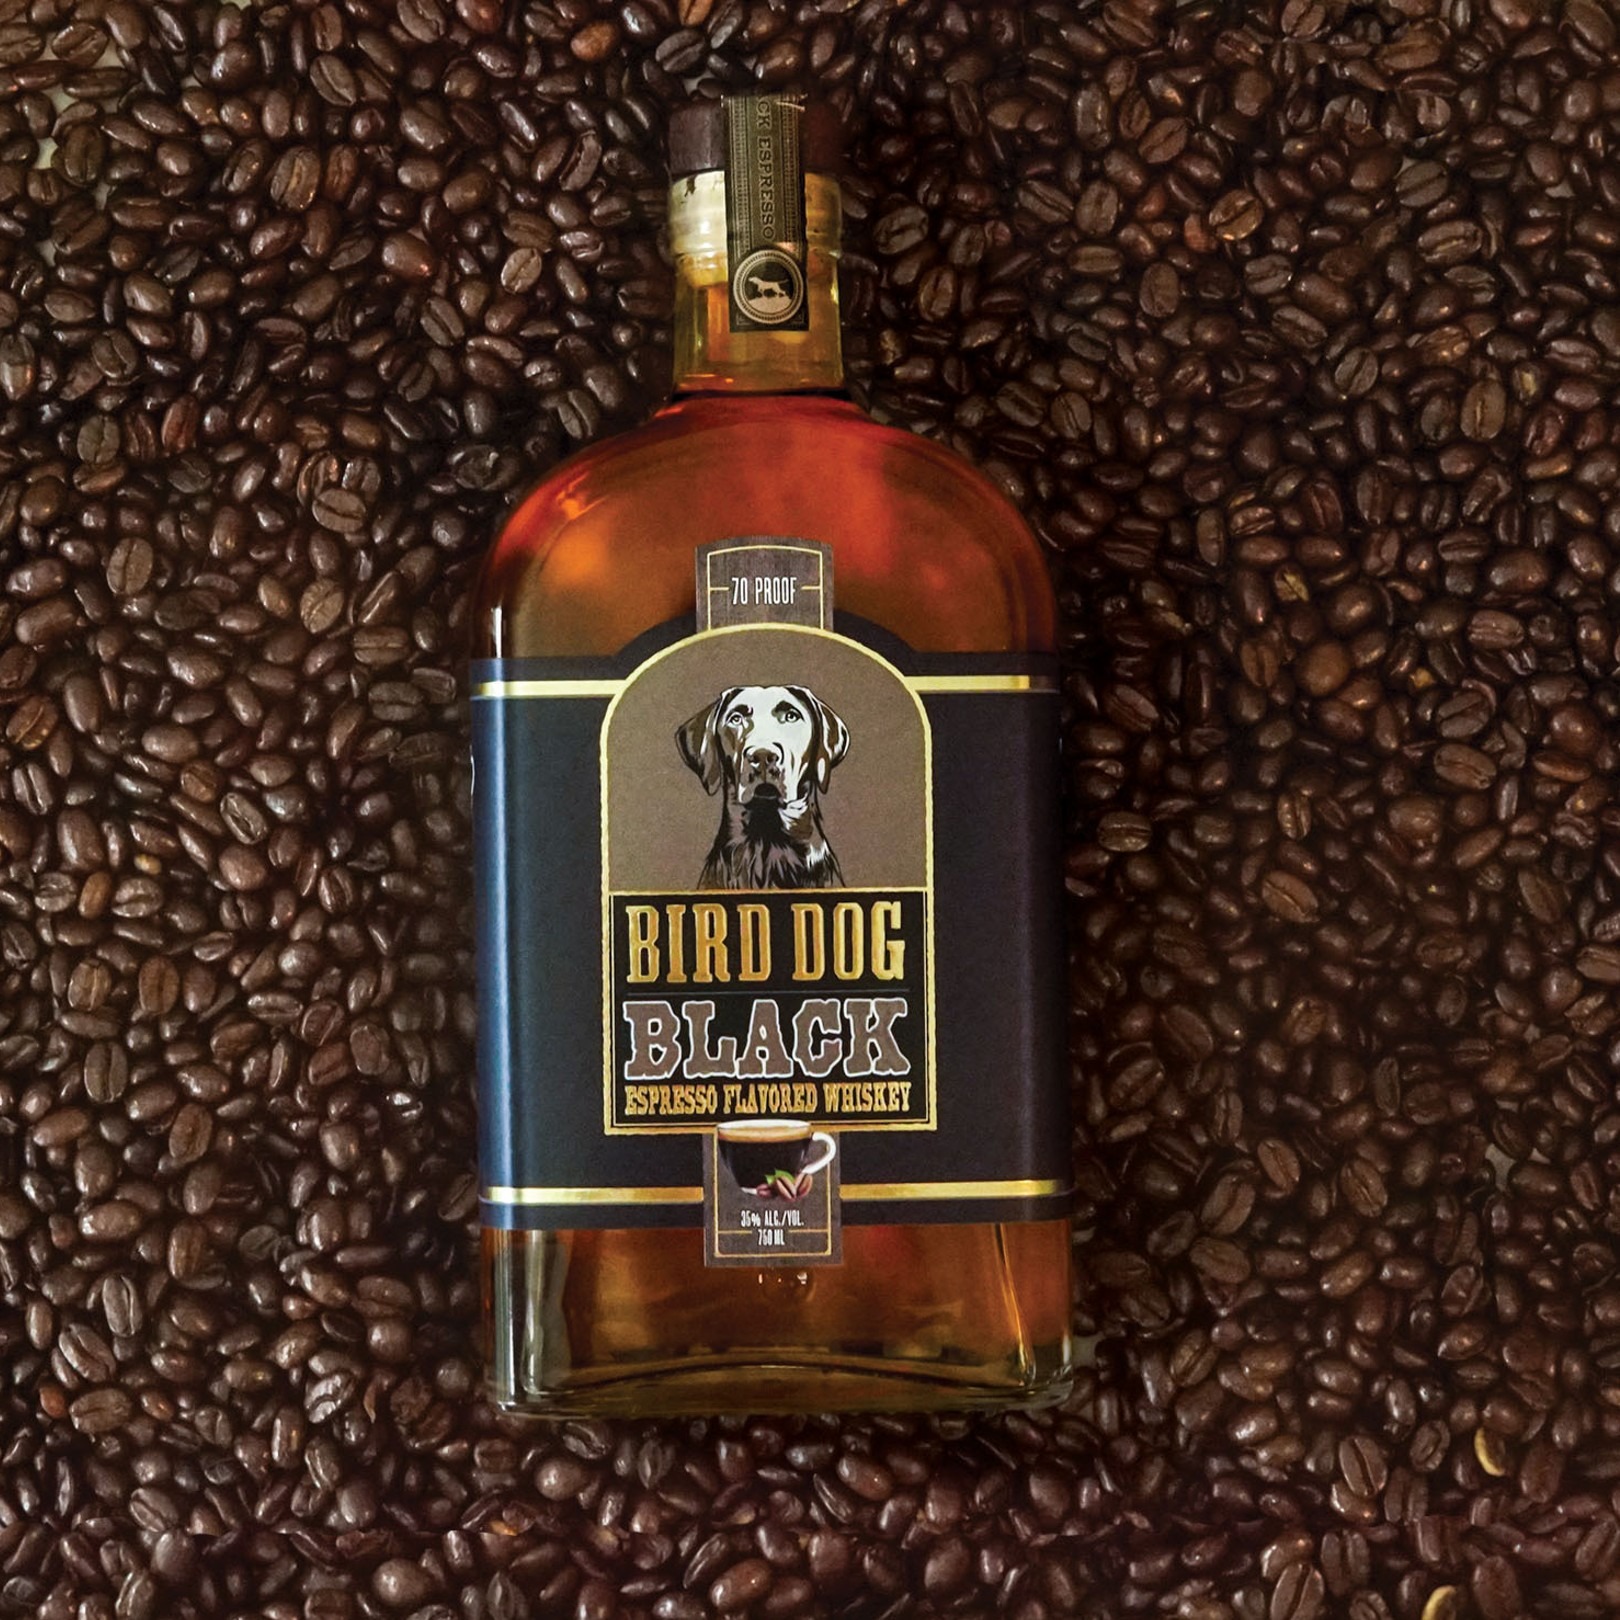 bird dog espresso bottle with coffee bean background